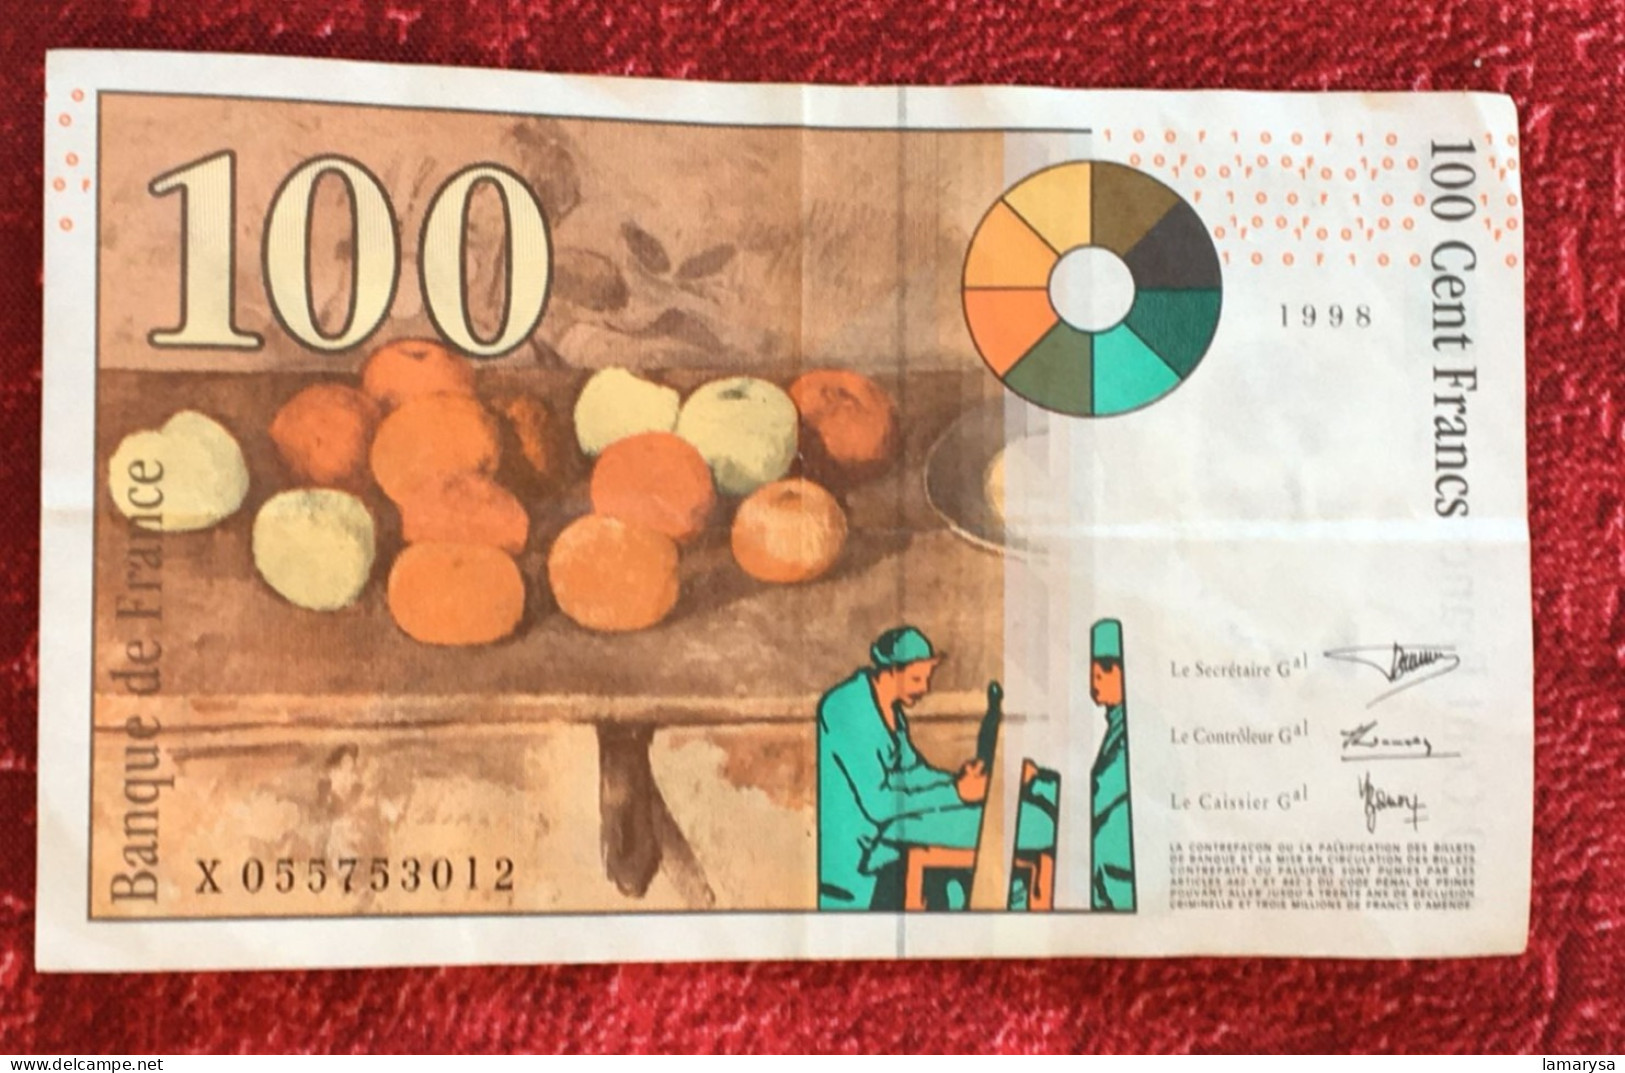 Monnaie & Billet De Banque Bank-Billet De France 1998 ''Francs''  Dernière Gamme  100 F 1997-1998 ''Cézanne'' - 100 F 1997-1998 ''Cézanne''